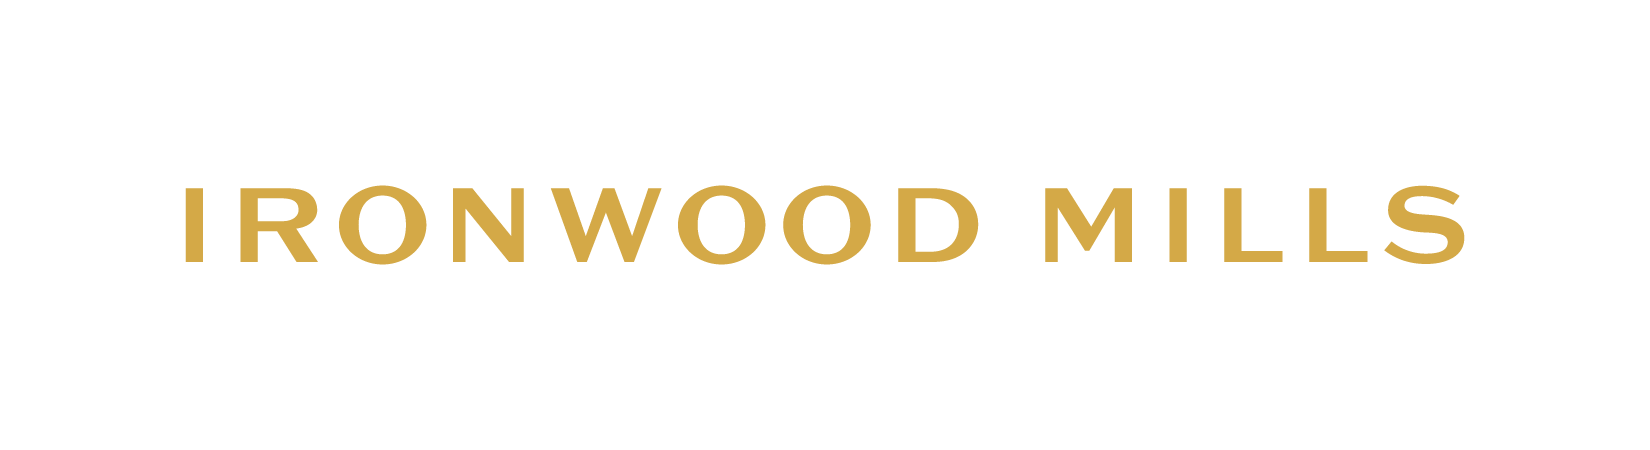 Ironwood Mills Wordmark - Cypress